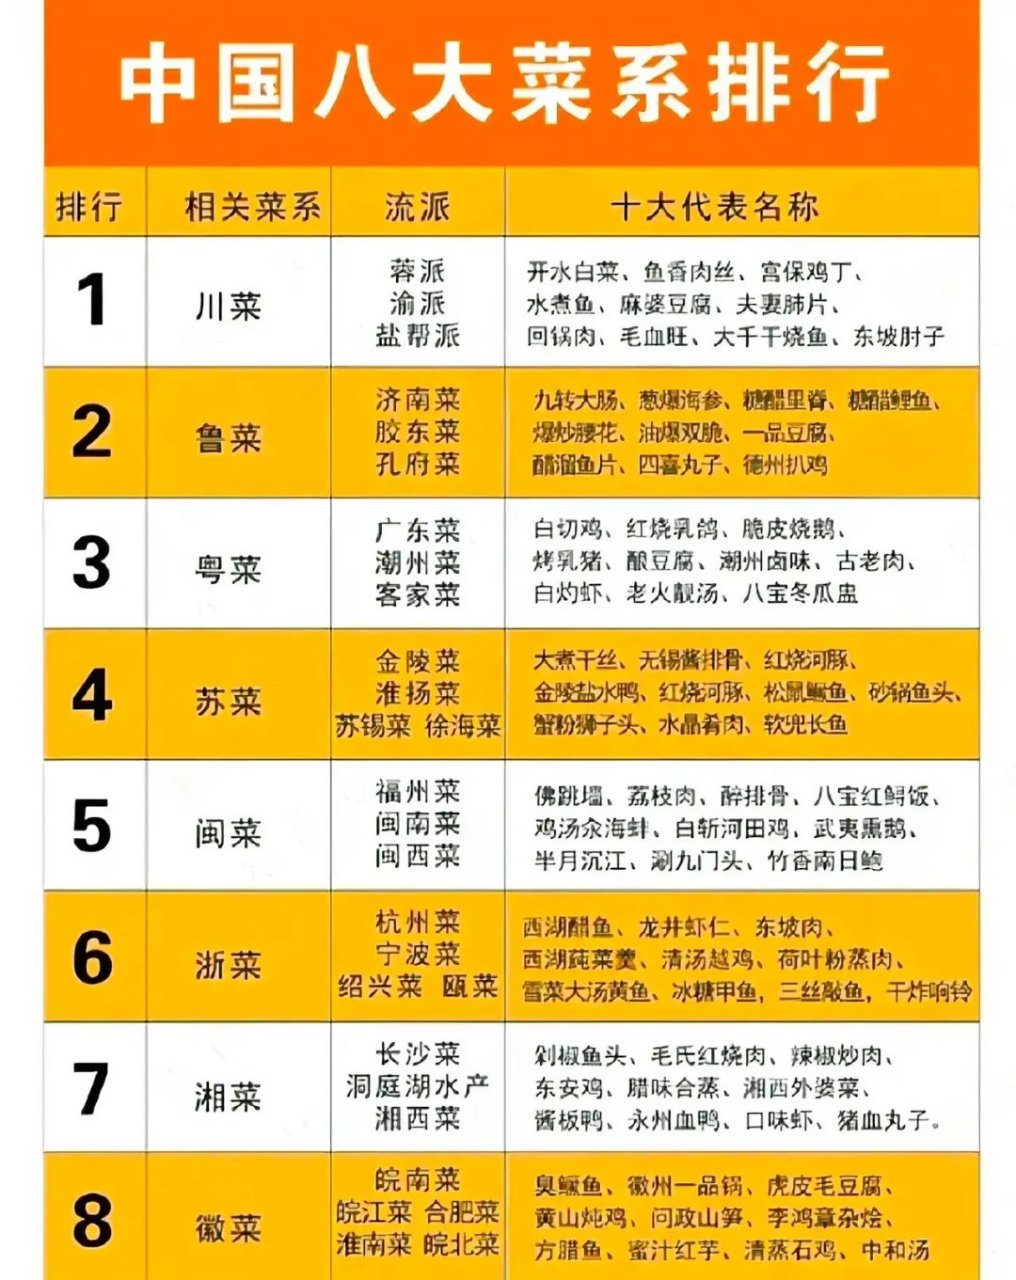 中国八大菜系排名榜,第一名实至名归!